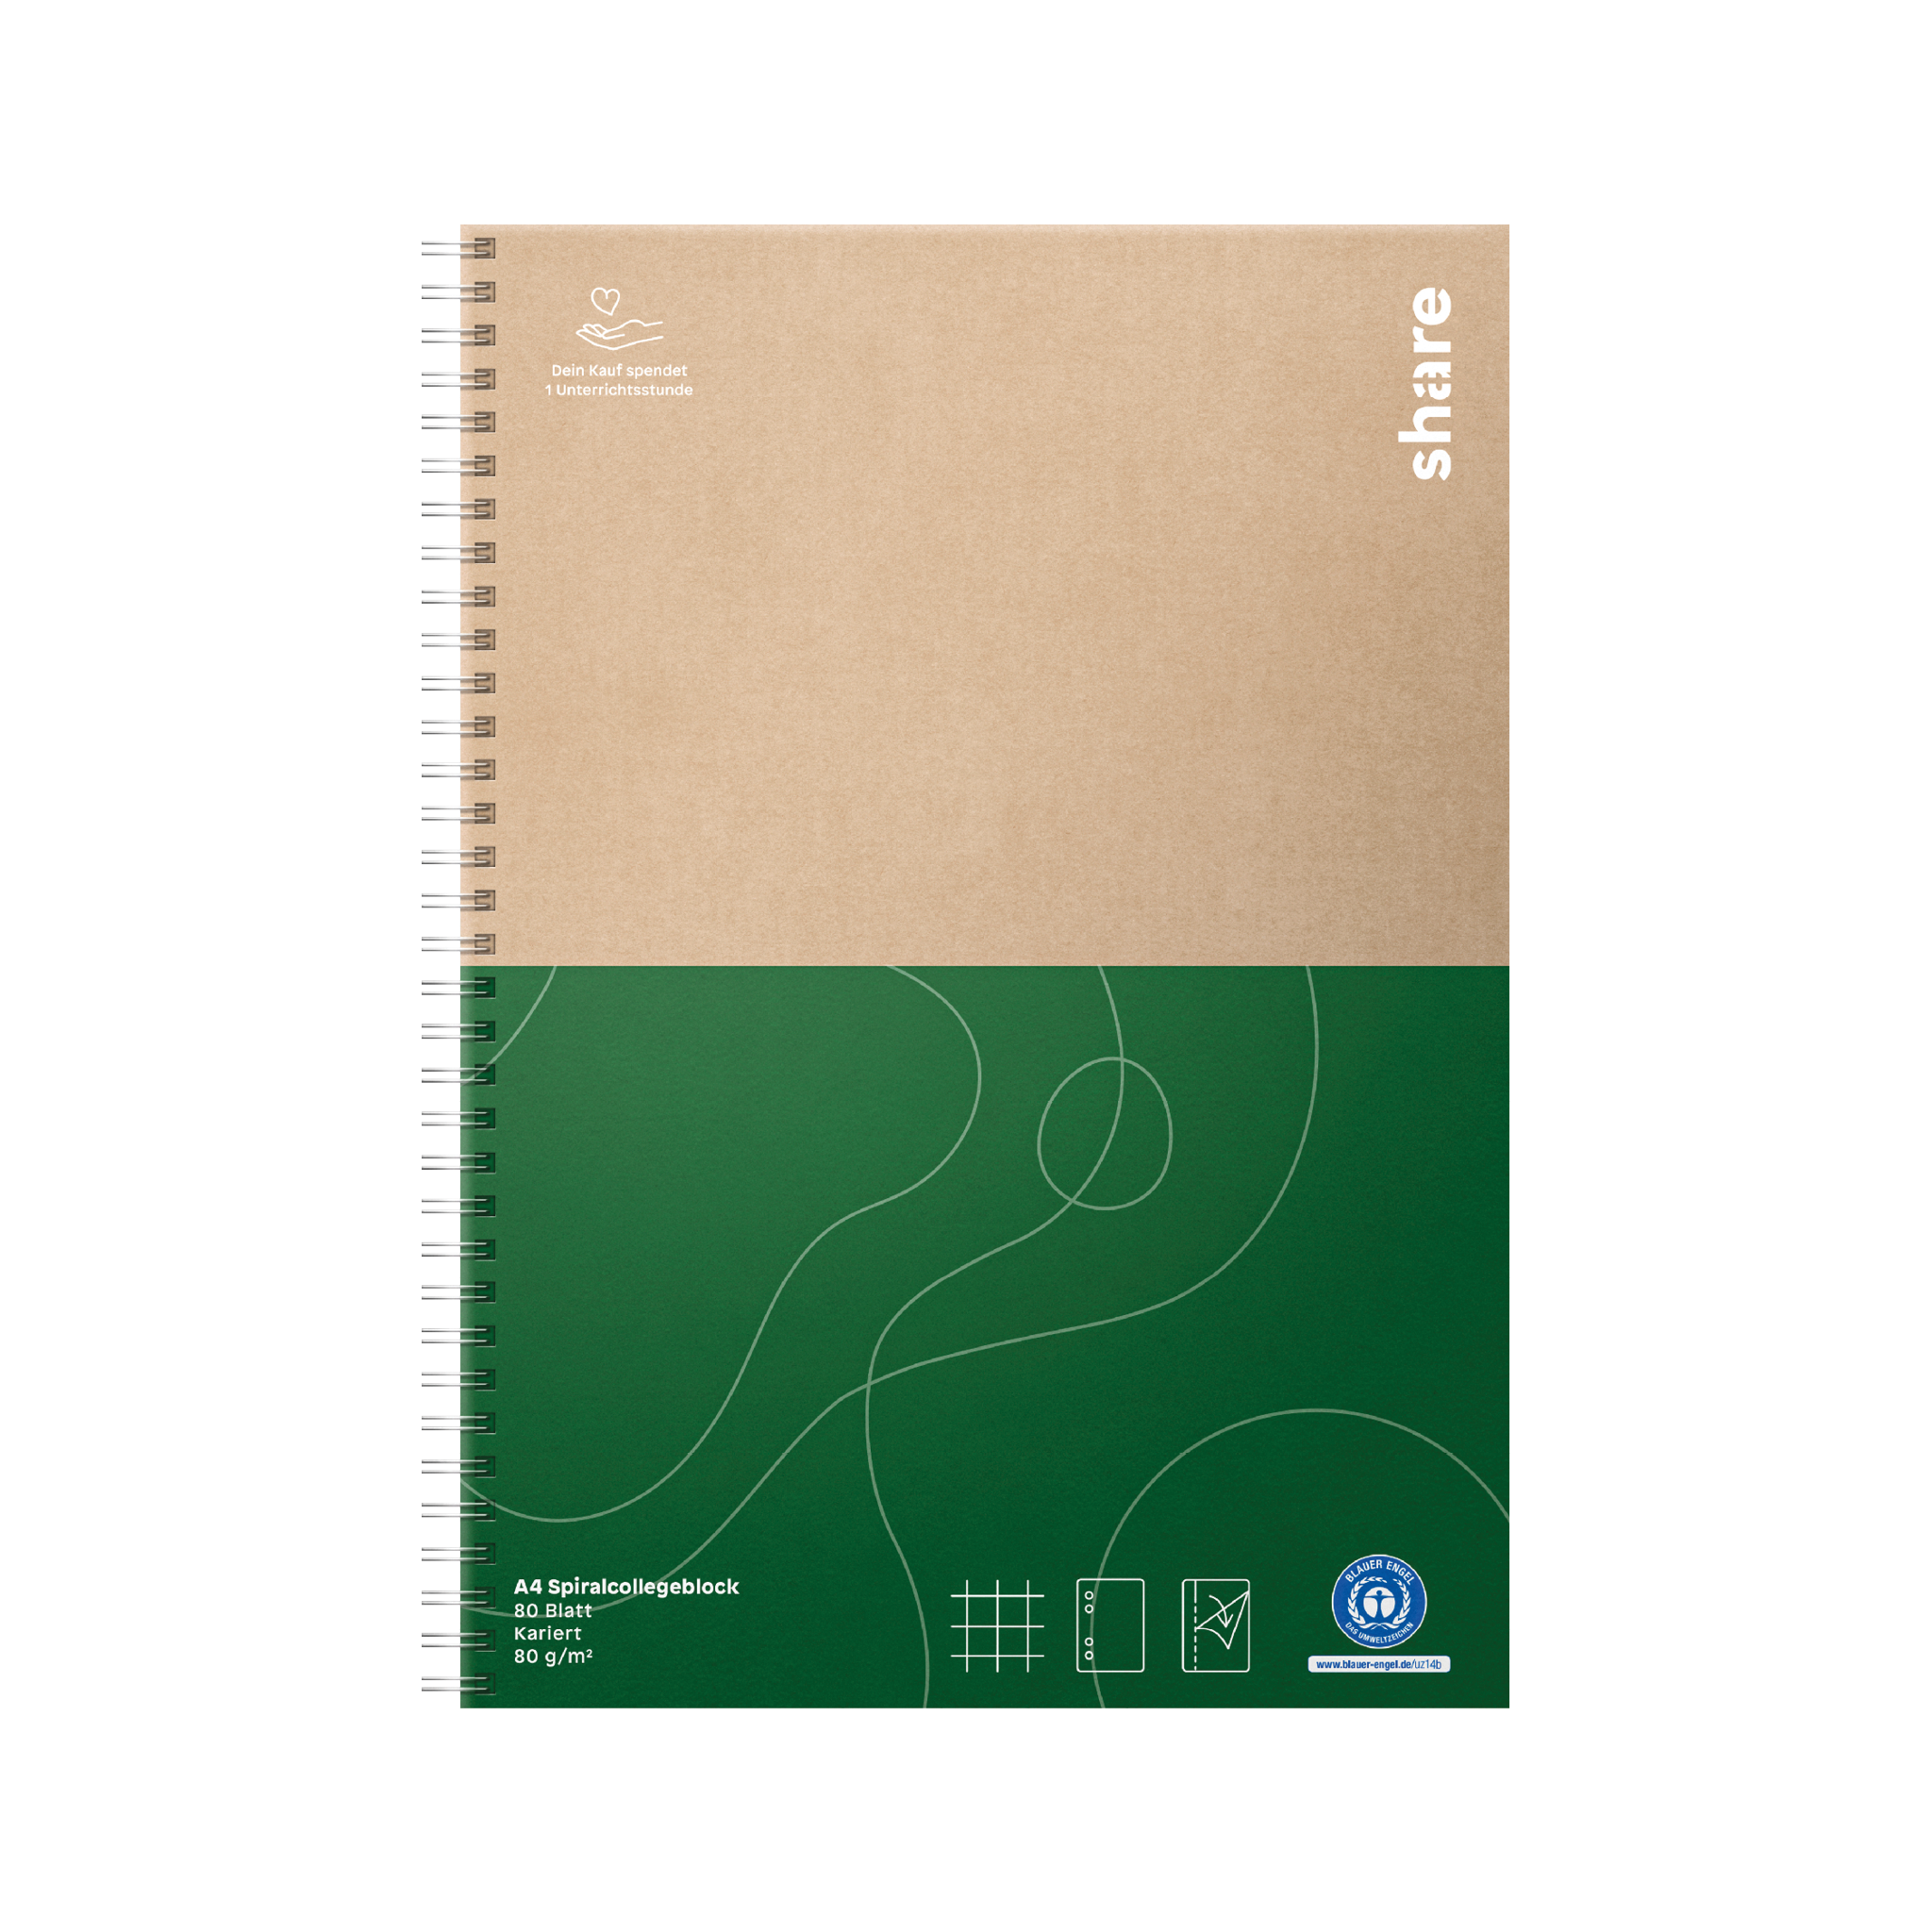 Ein Share Spiral-Collegeblock mit einem grünen und braunen Einband, der abstrakte Linienkunst zeigt und mit Elementen für nachhaltigen Konsum versehen ist.